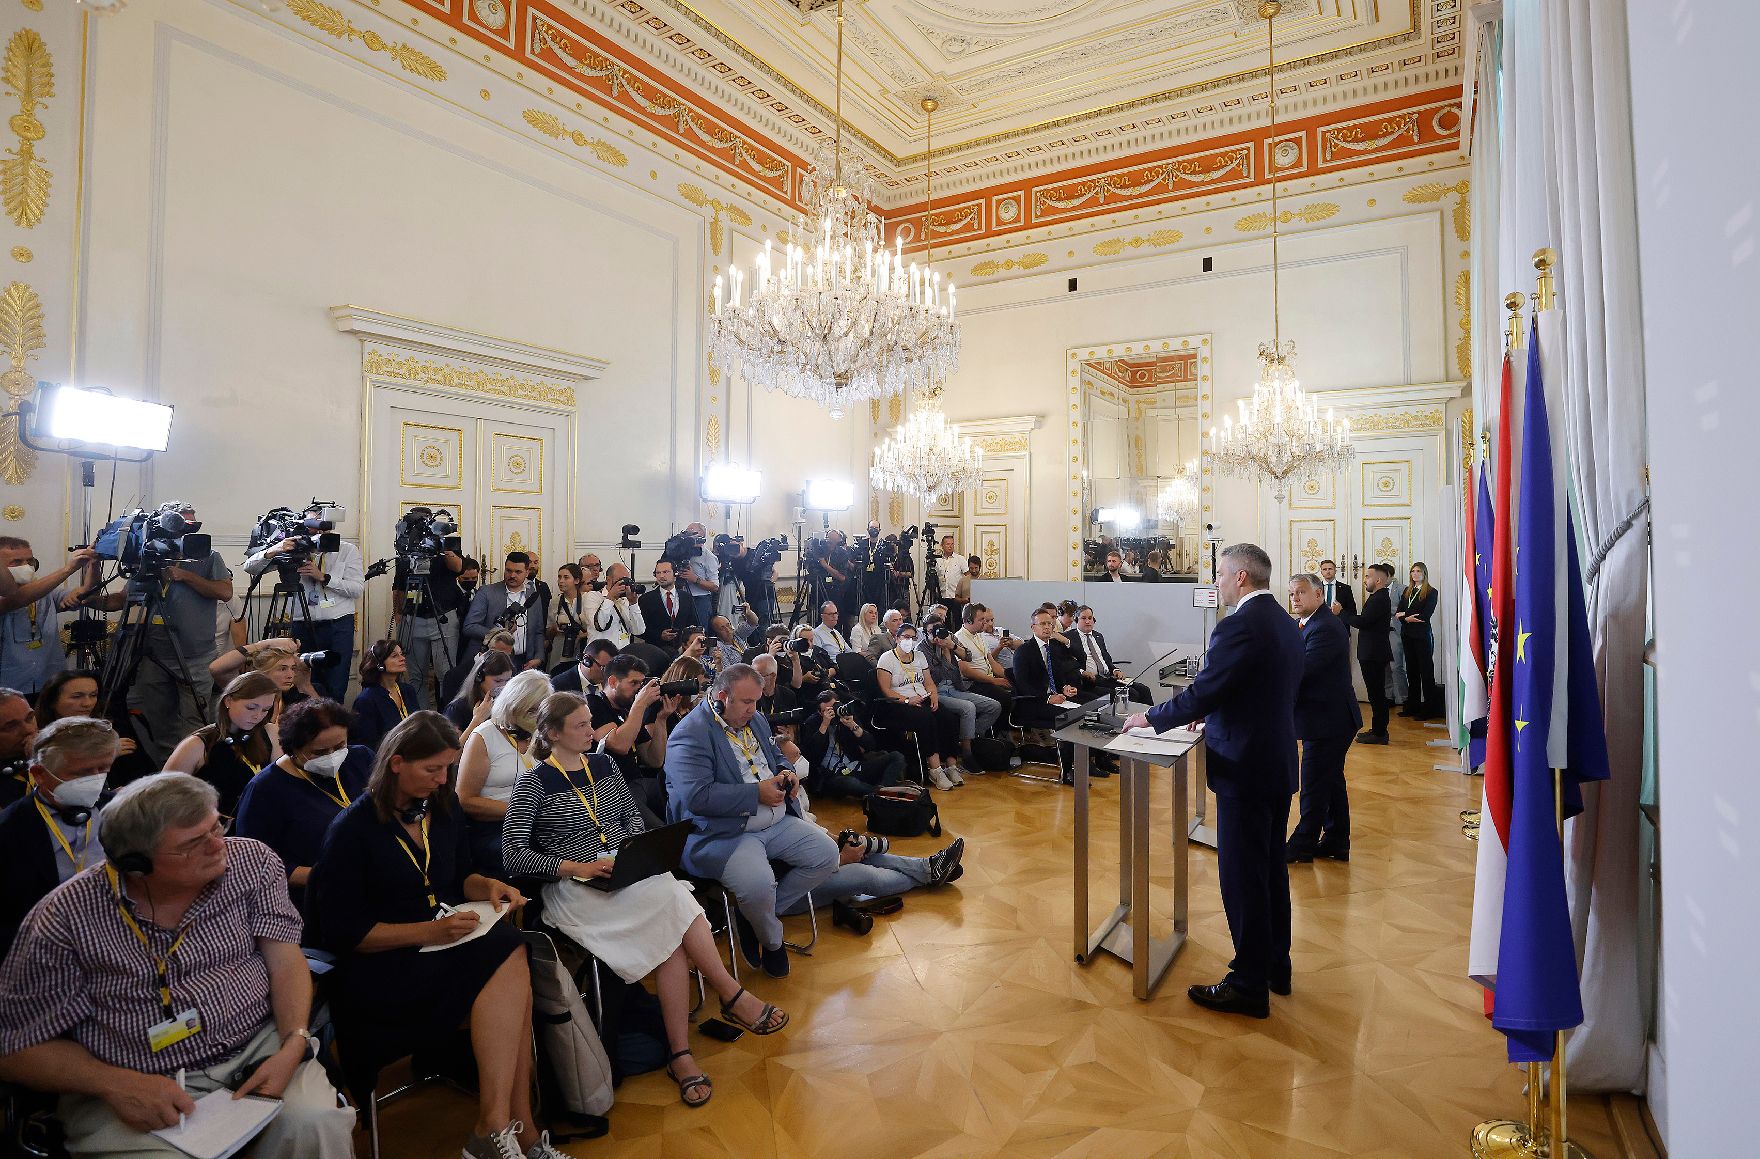 Am 28. Juli 2022 empfing Bundeskanzler Karl Nehammer den ungarischen Ministerpräsident Viktor Orban. Im Bild bei einem gemeinsamen Pressestatement.